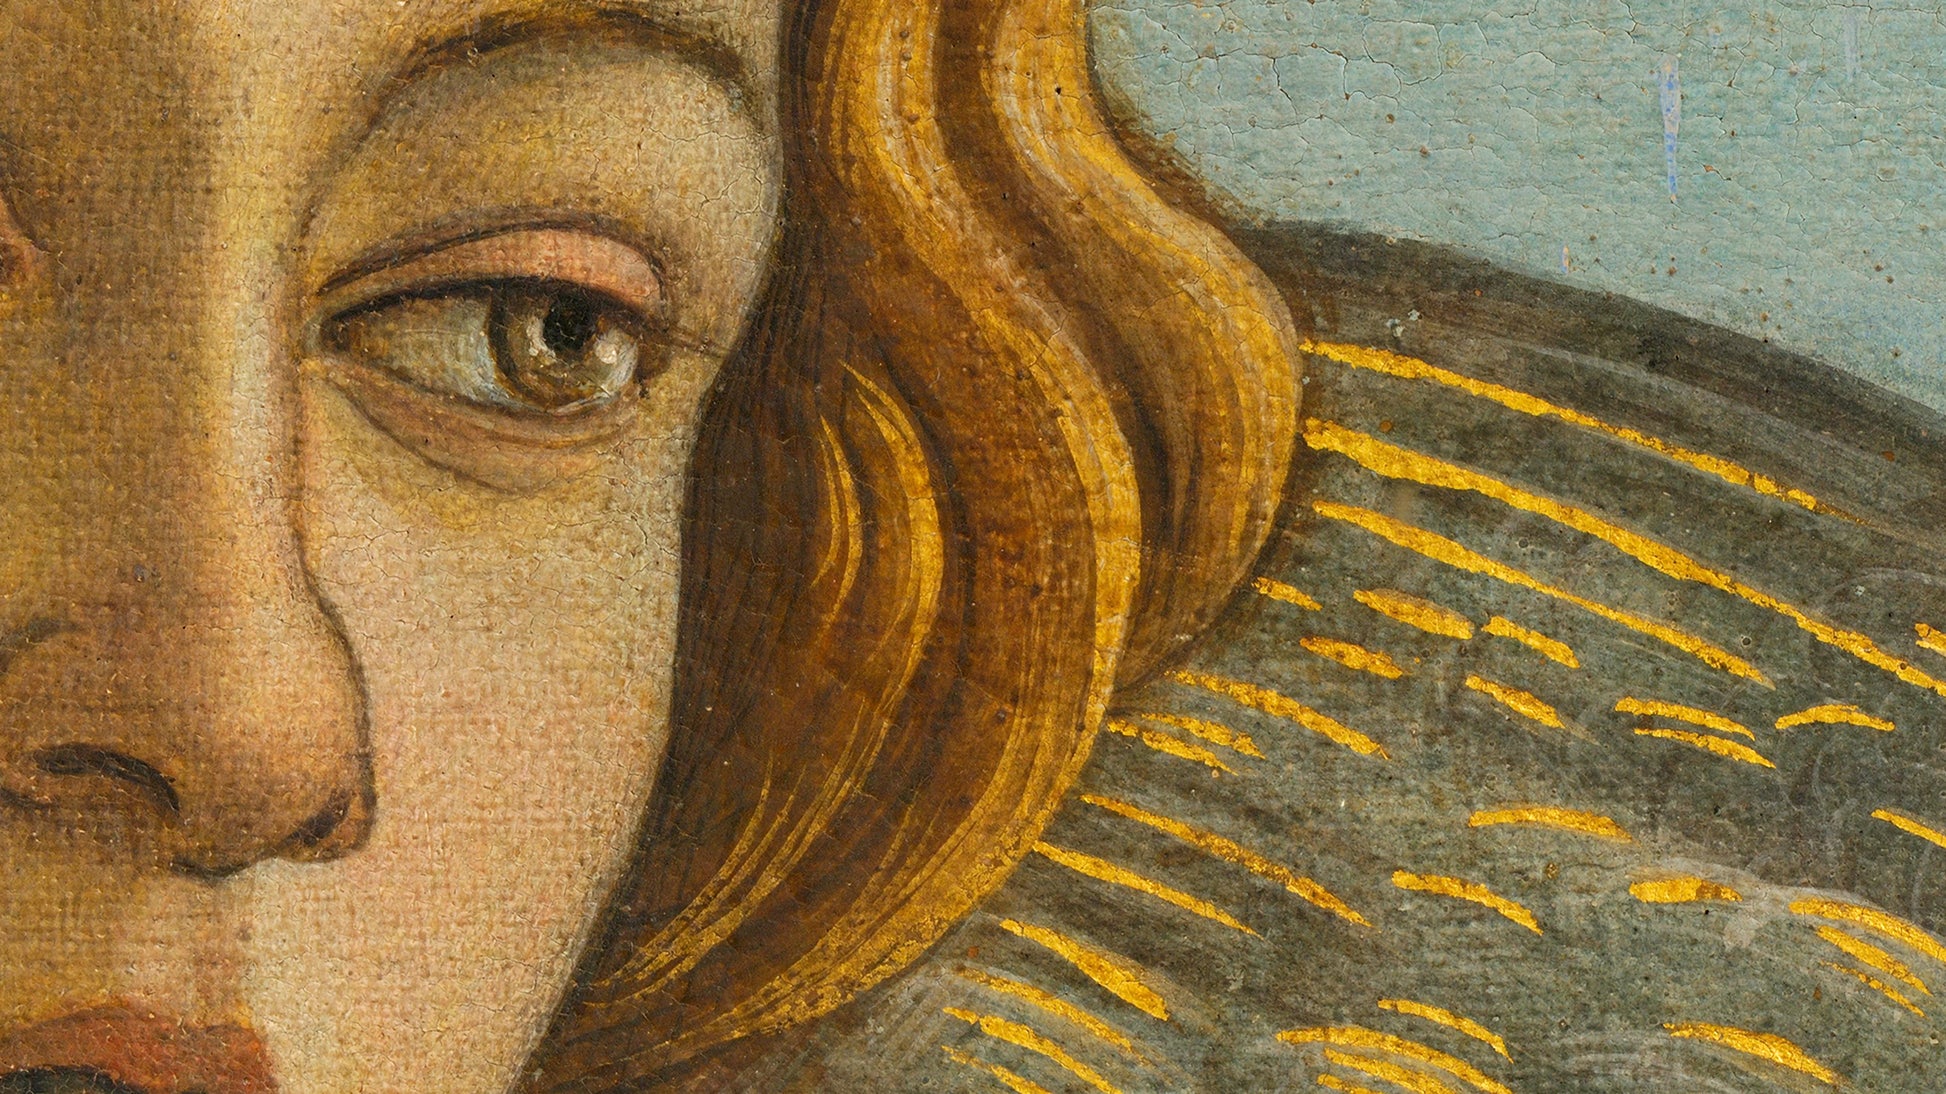 Detal twarzy Wenus z dzieła 'Narodziny Wenus' Botticellego, z wyjątkową precyzją detalów i kolorów, osiągniętą dzięki technologii DECOMURA AI